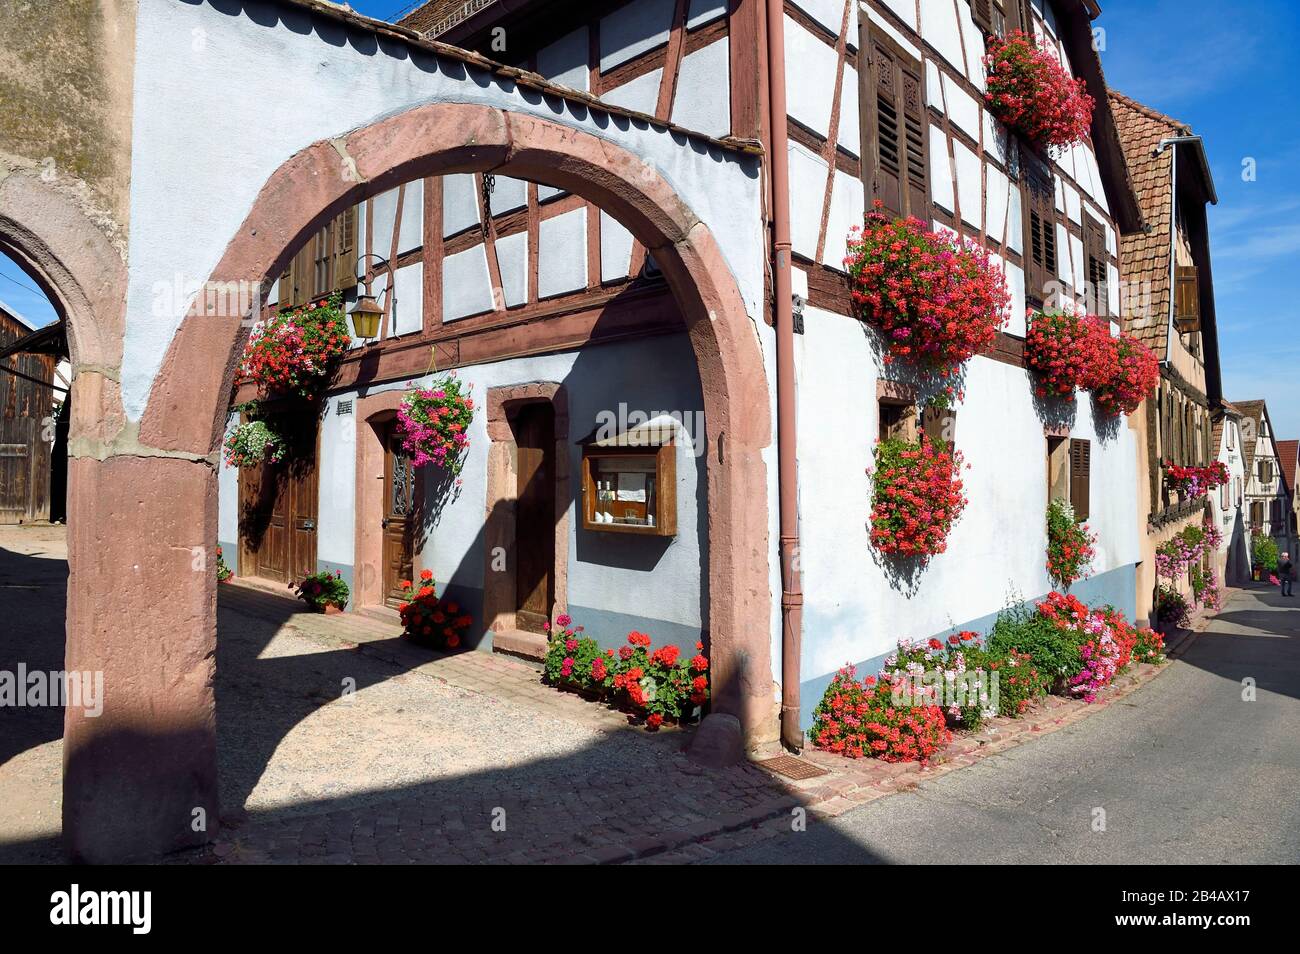 La France, le Haut Rhin, la route des vins d'Alsace, Hunawihr, a labellisé Les Plus Beaux Villages de France, maison de vigneron dans la rue principale Banque D'Images